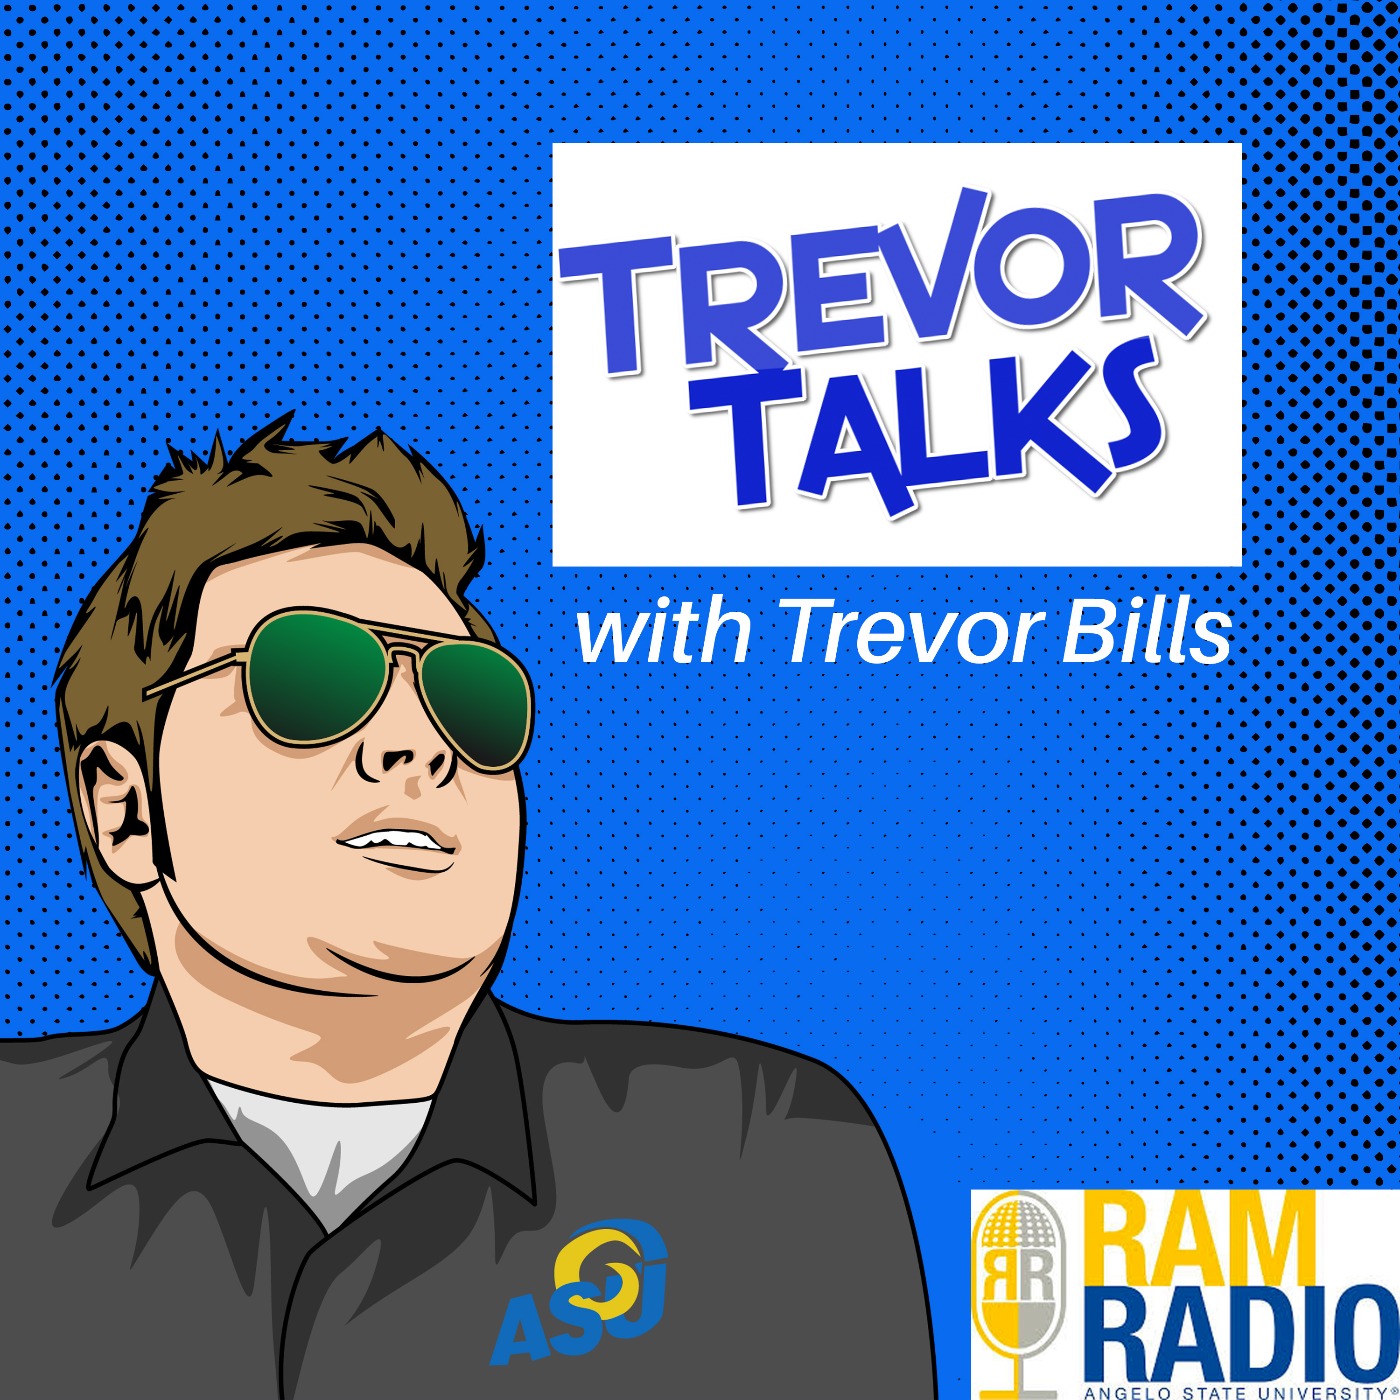 Trevor Talks